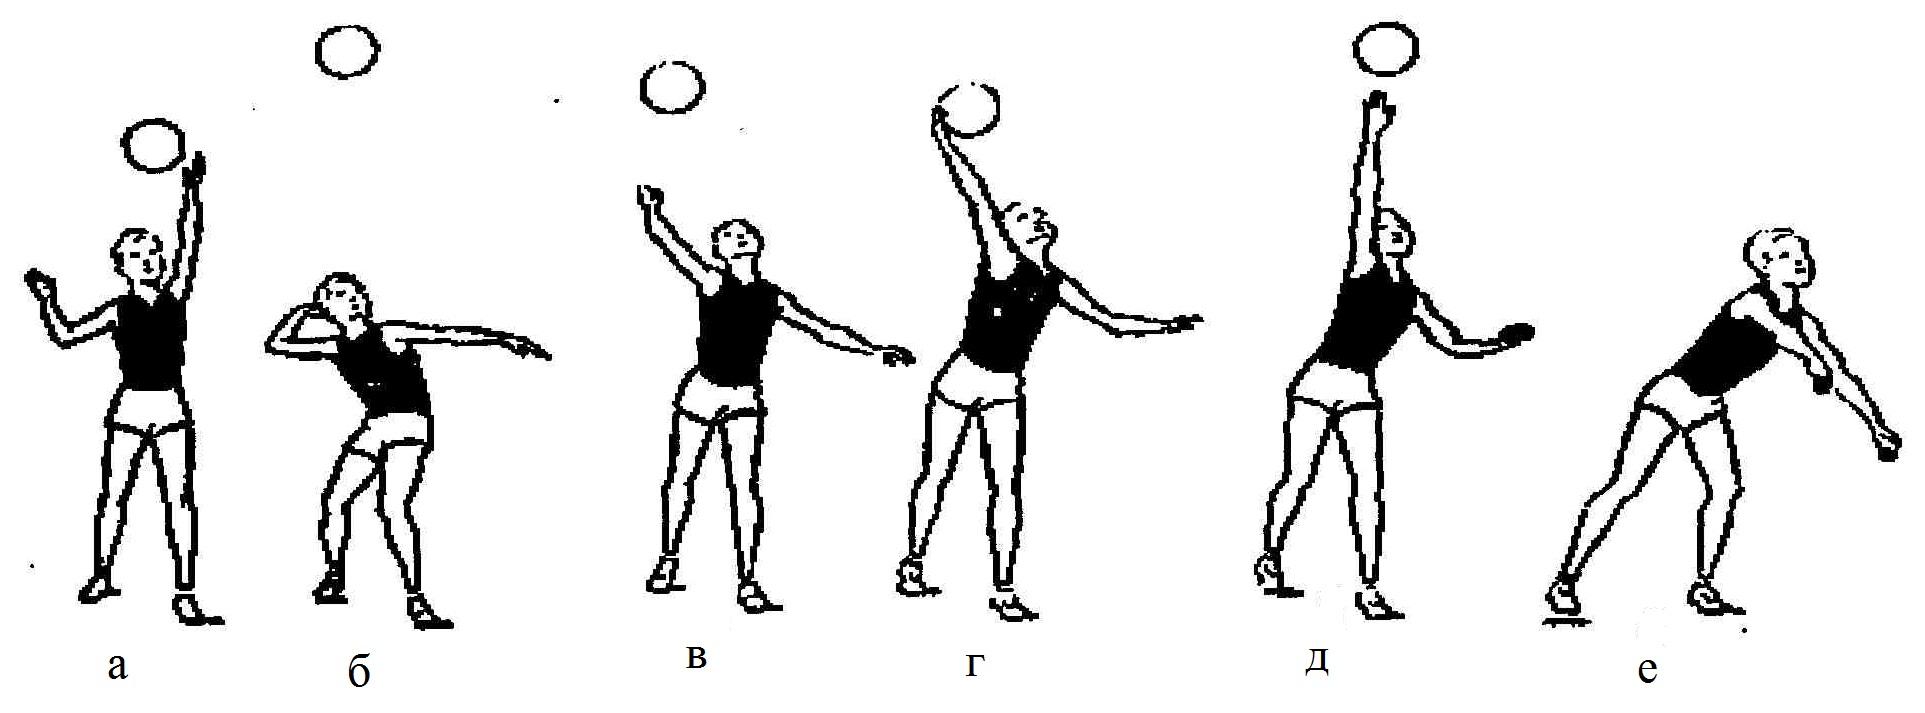 Упражнения для приема в волейболе. Упражнения с набивным мячом для волейбола. Упражнения для верхней подачи мяча в волейболе. Подводящие упражнения в волейболе для верхней подачи. Верхней прямой подаче упражнения.